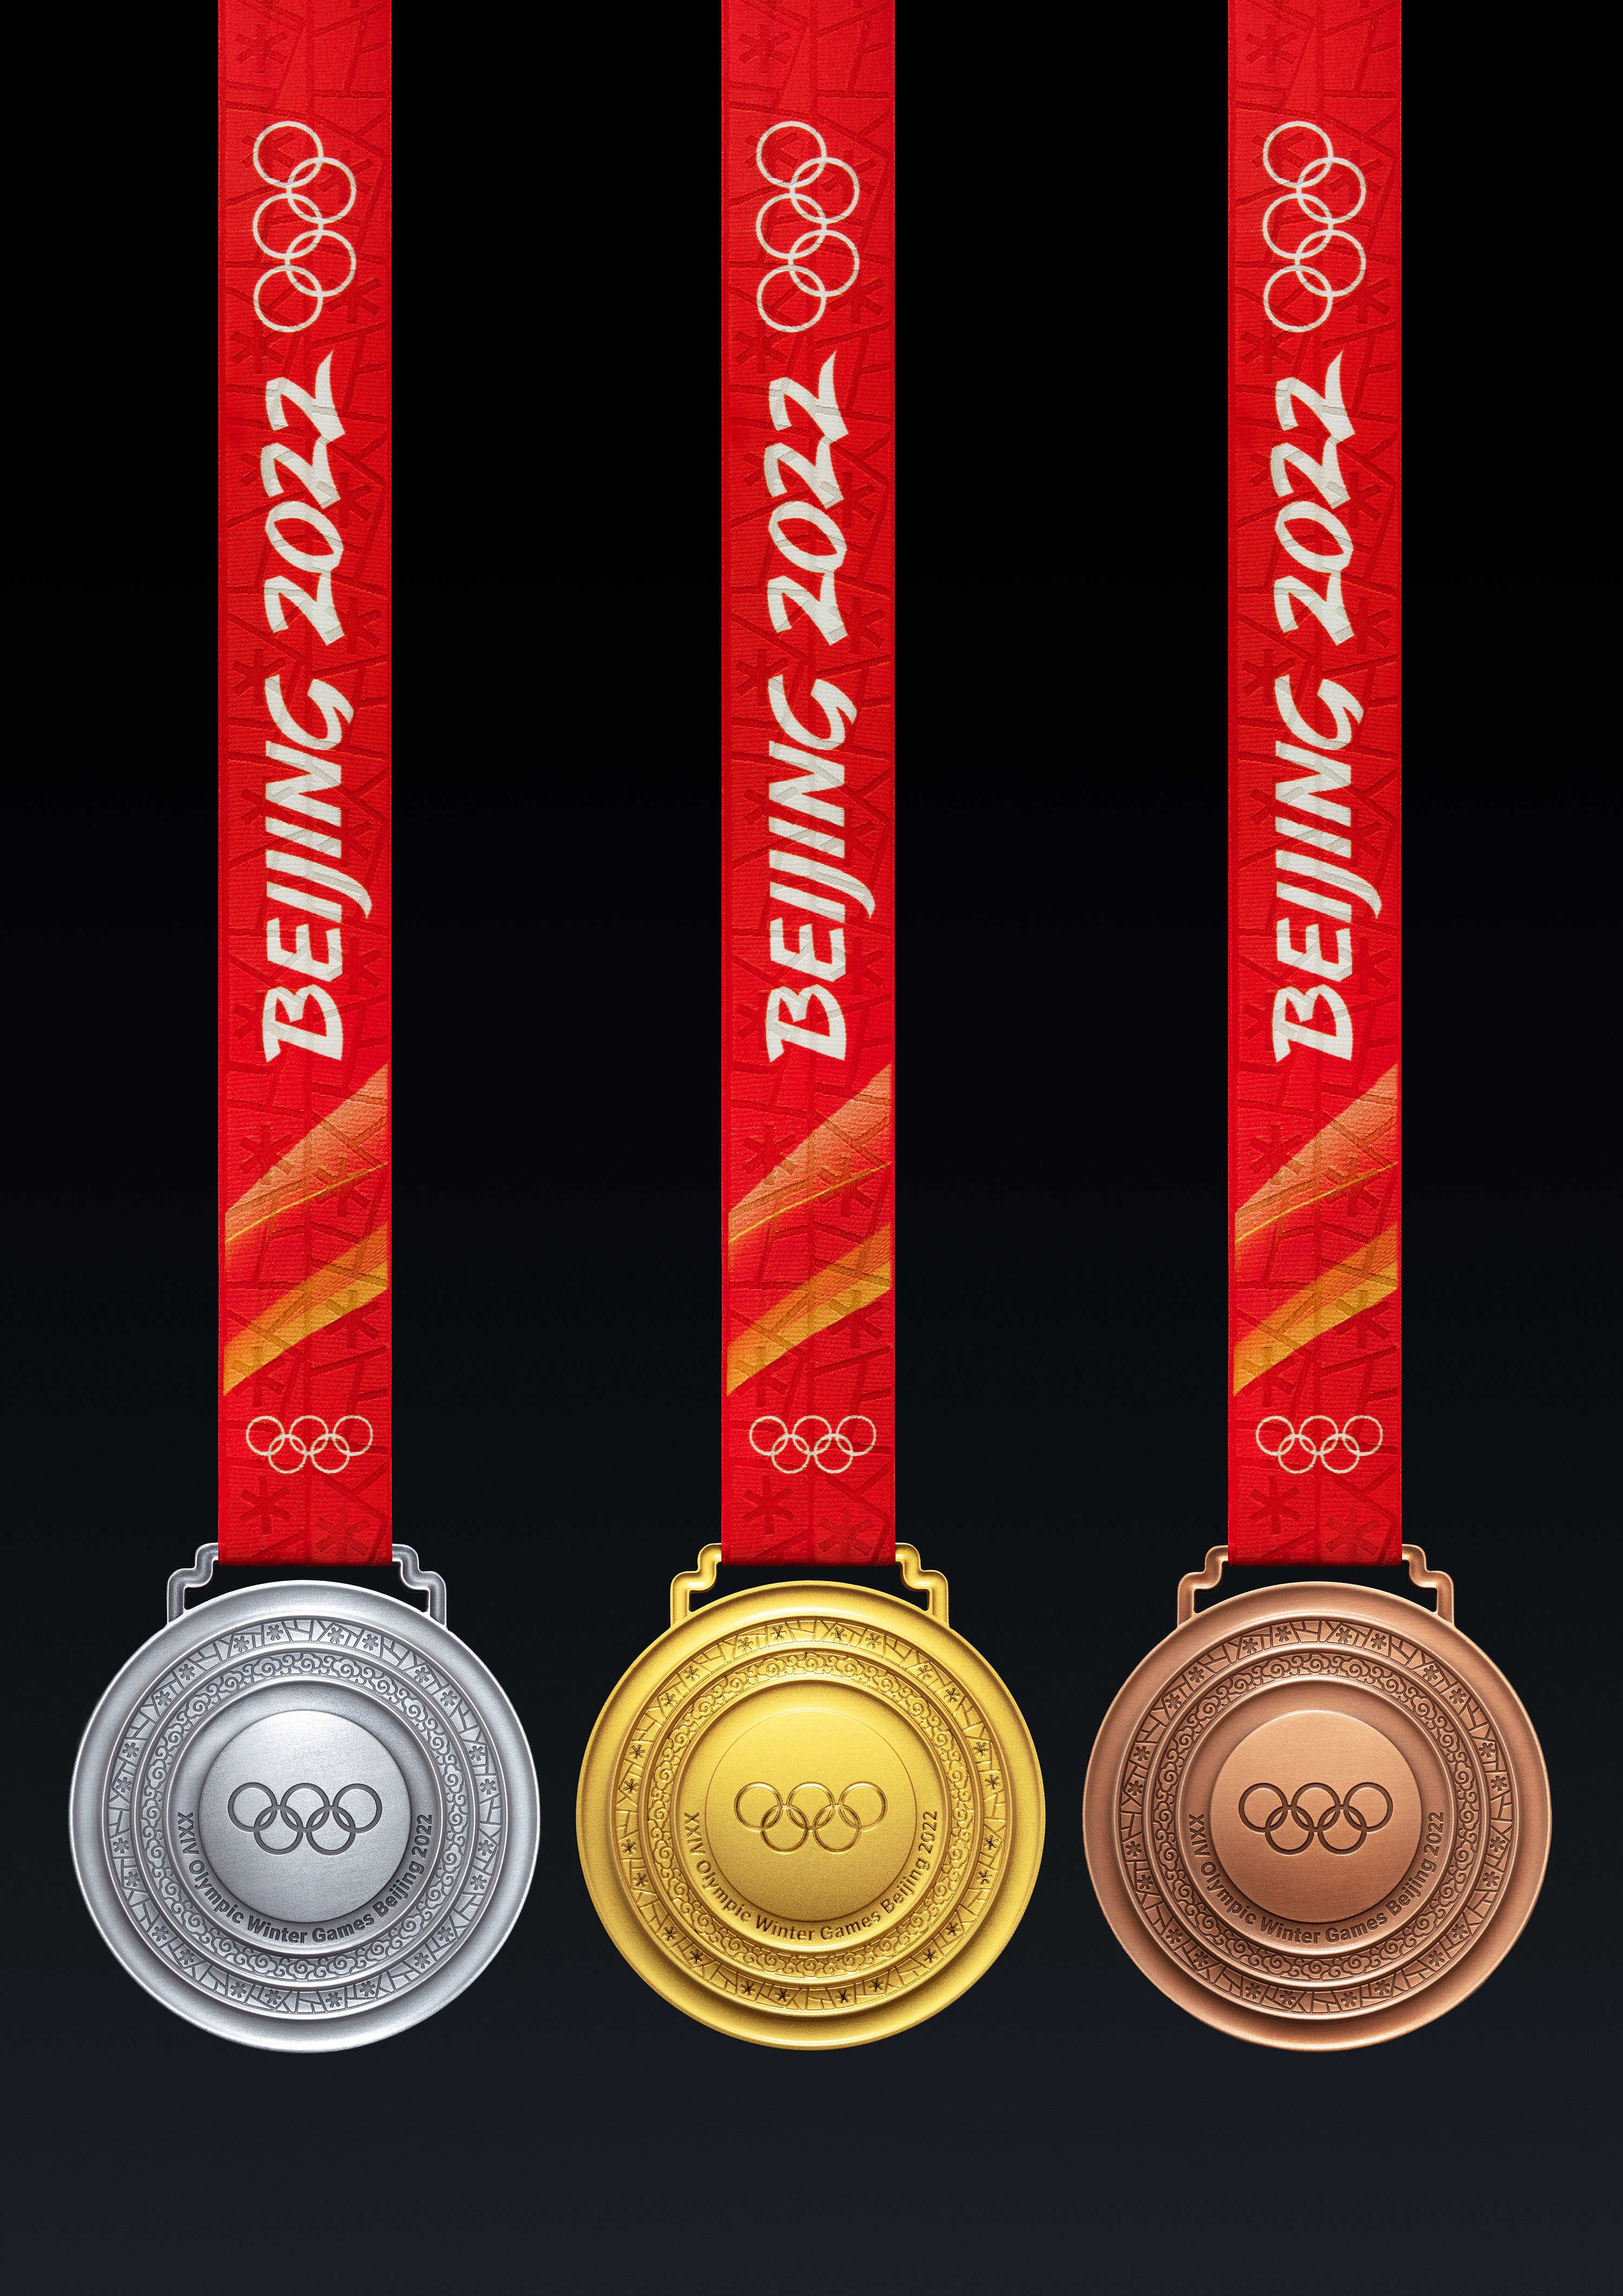 这是北京冬奥会的奖牌